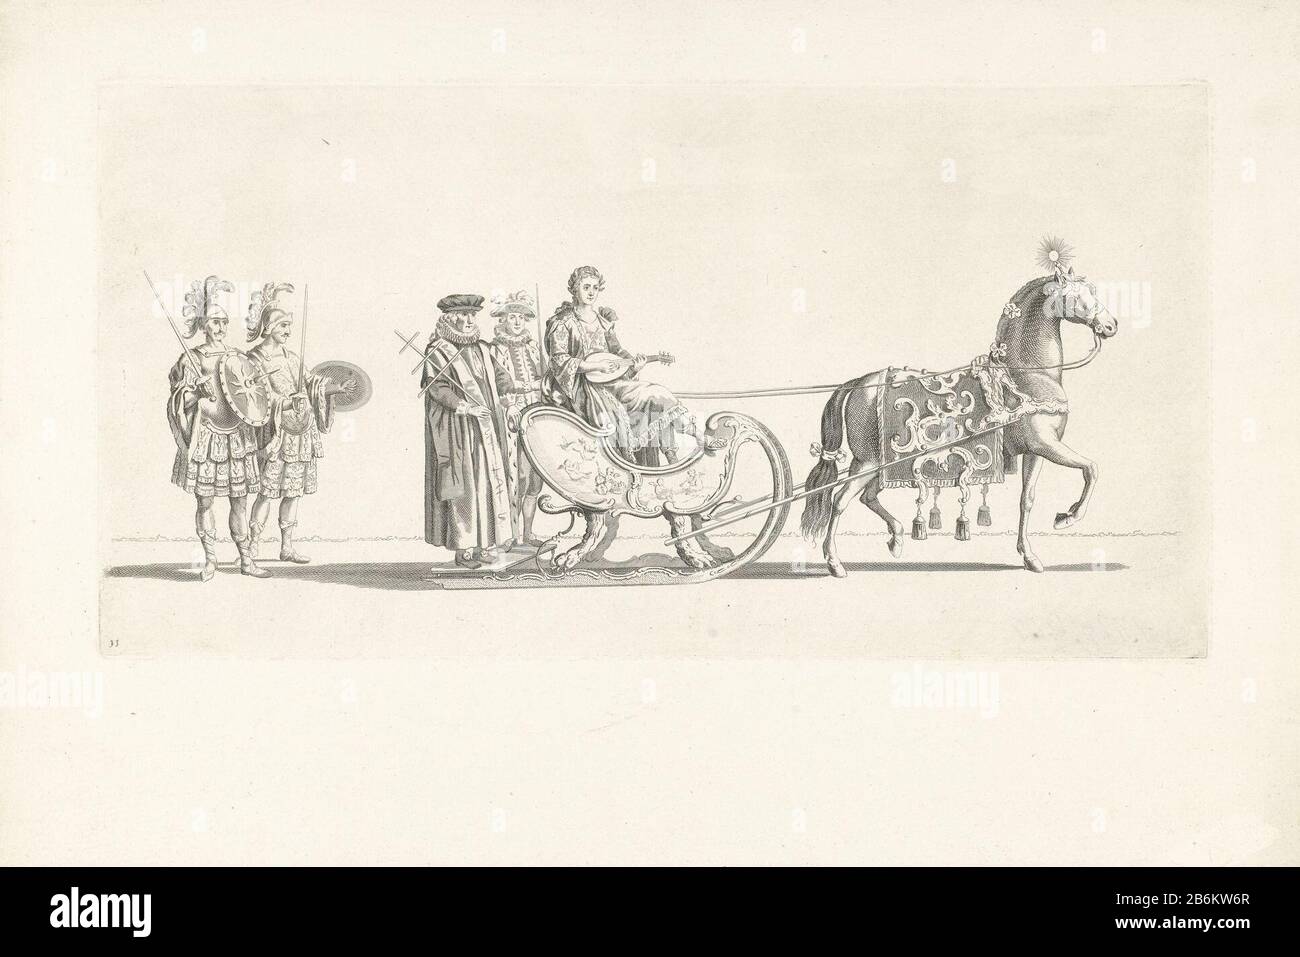 Onzième chariot de traîneau Vaart de la Leiden veniam Pro Laude Society en 1776 (titre de série) le onzième chariot de la parade. Une voiture avec la personnification de la musique, tirée par un cheval, suivie de deux soldats romains. Partie d'une série de douze plaques de navigation sur les diapositives le 24 janvier 1776 organisée par la Leiden Society veniam Pro Laude à l'occasion du deuxième Centenaire du secours de Leiden (3 octobre 1574) et de la création de l'Université de Leiden (8 février 1575) . Fabricant : machine à imprimer: Nicolaas van der Worm dans le dessin: Abraham DelfossPlaats fabrication: Non Banque D'Images